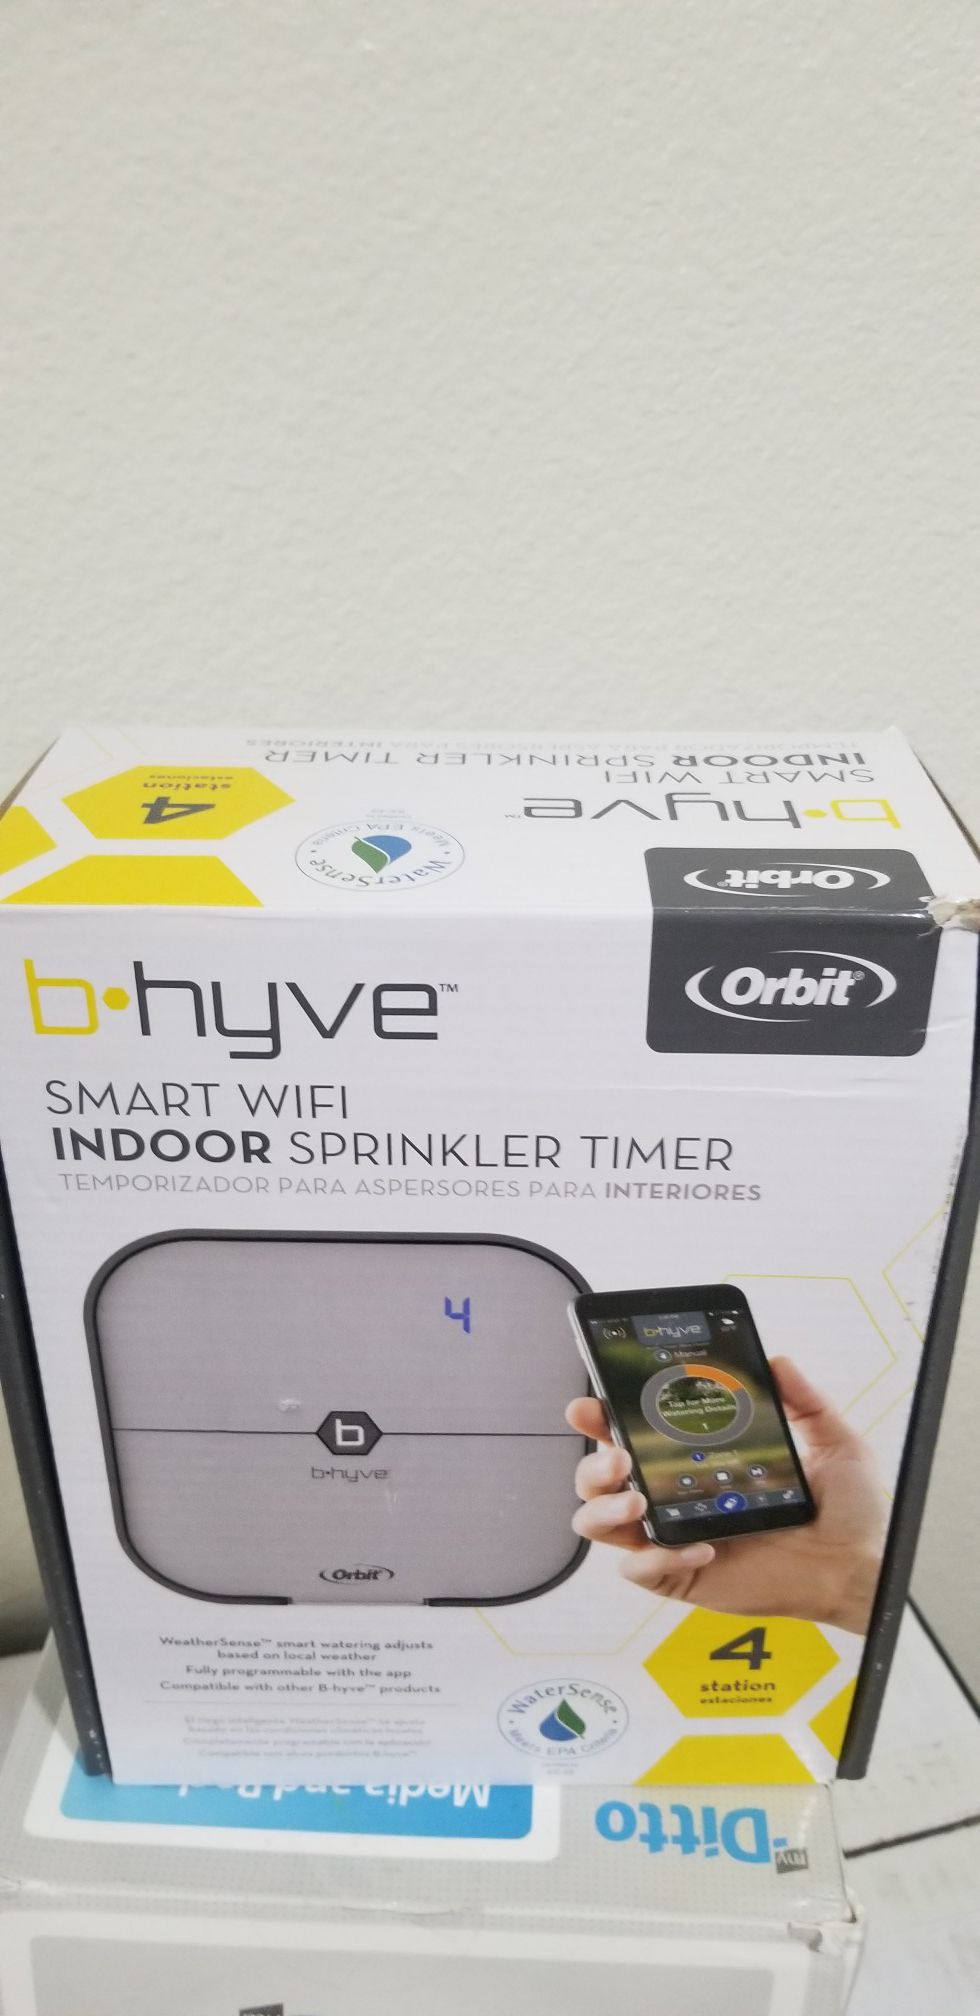 Orbit B-hyve Smart Sprinkler Timer